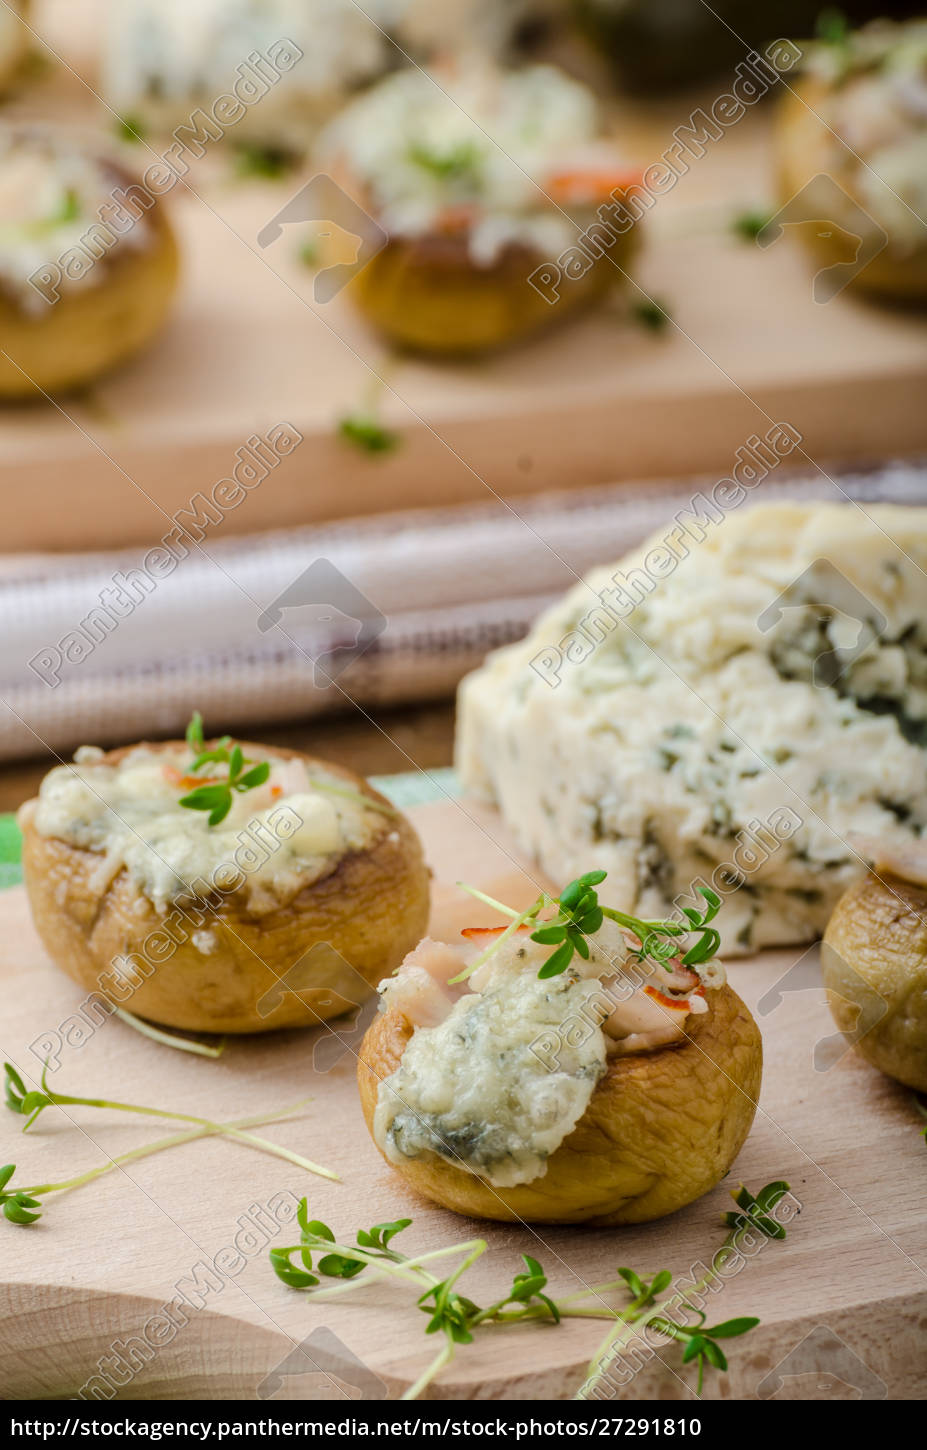 Pilze gefüllt mit Käse - Stockfoto - #27291810 | Bildagentur PantherMedia